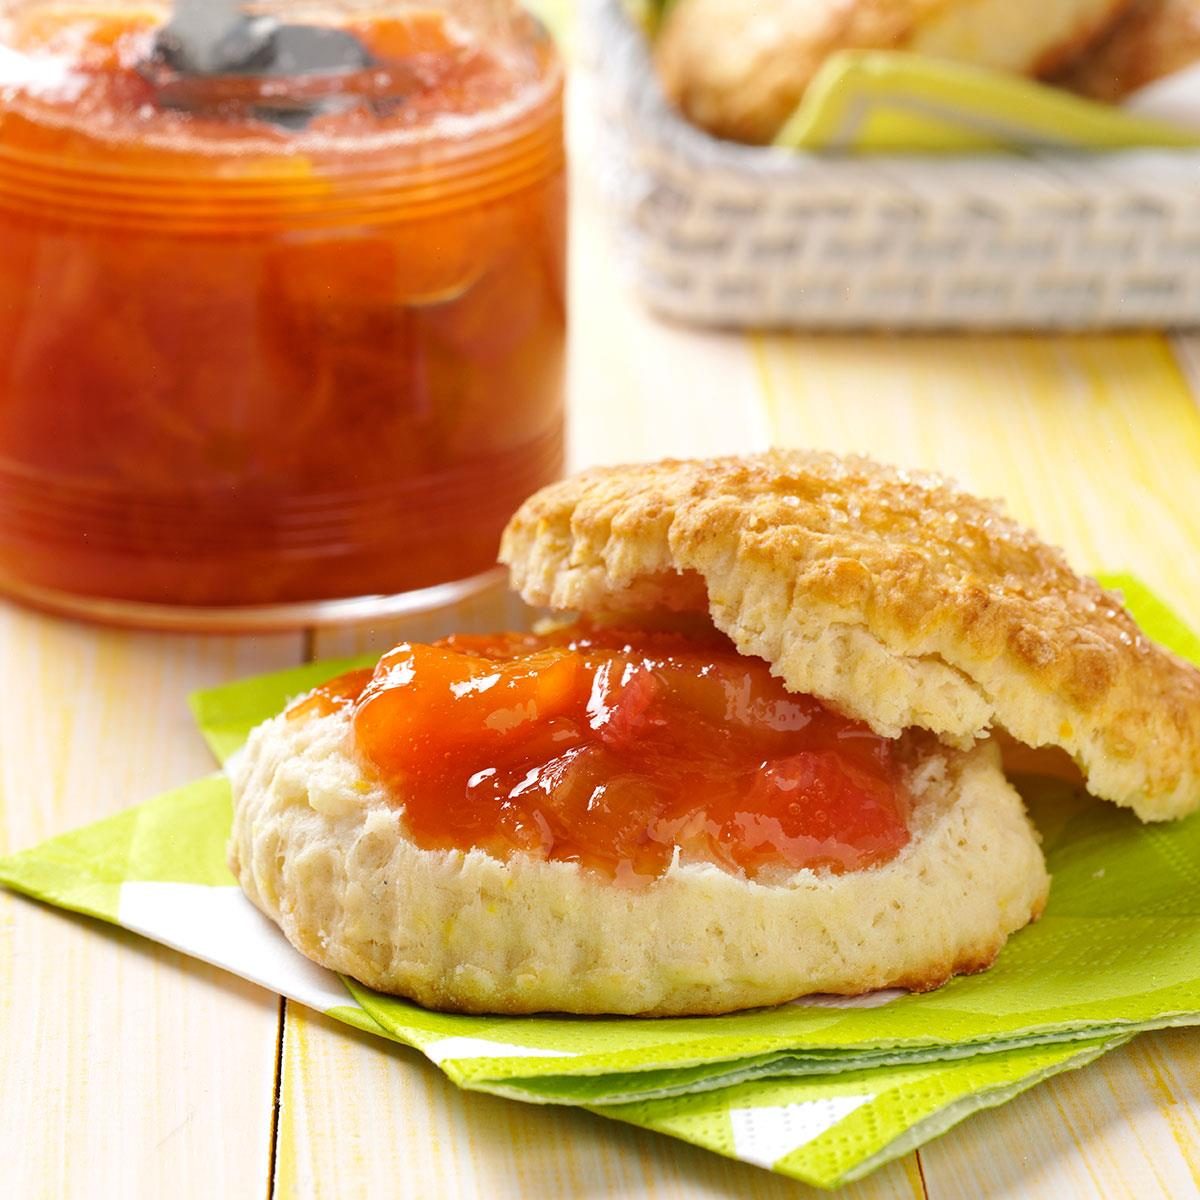 Peach Rhubarb Jam Recipe: How to Make It